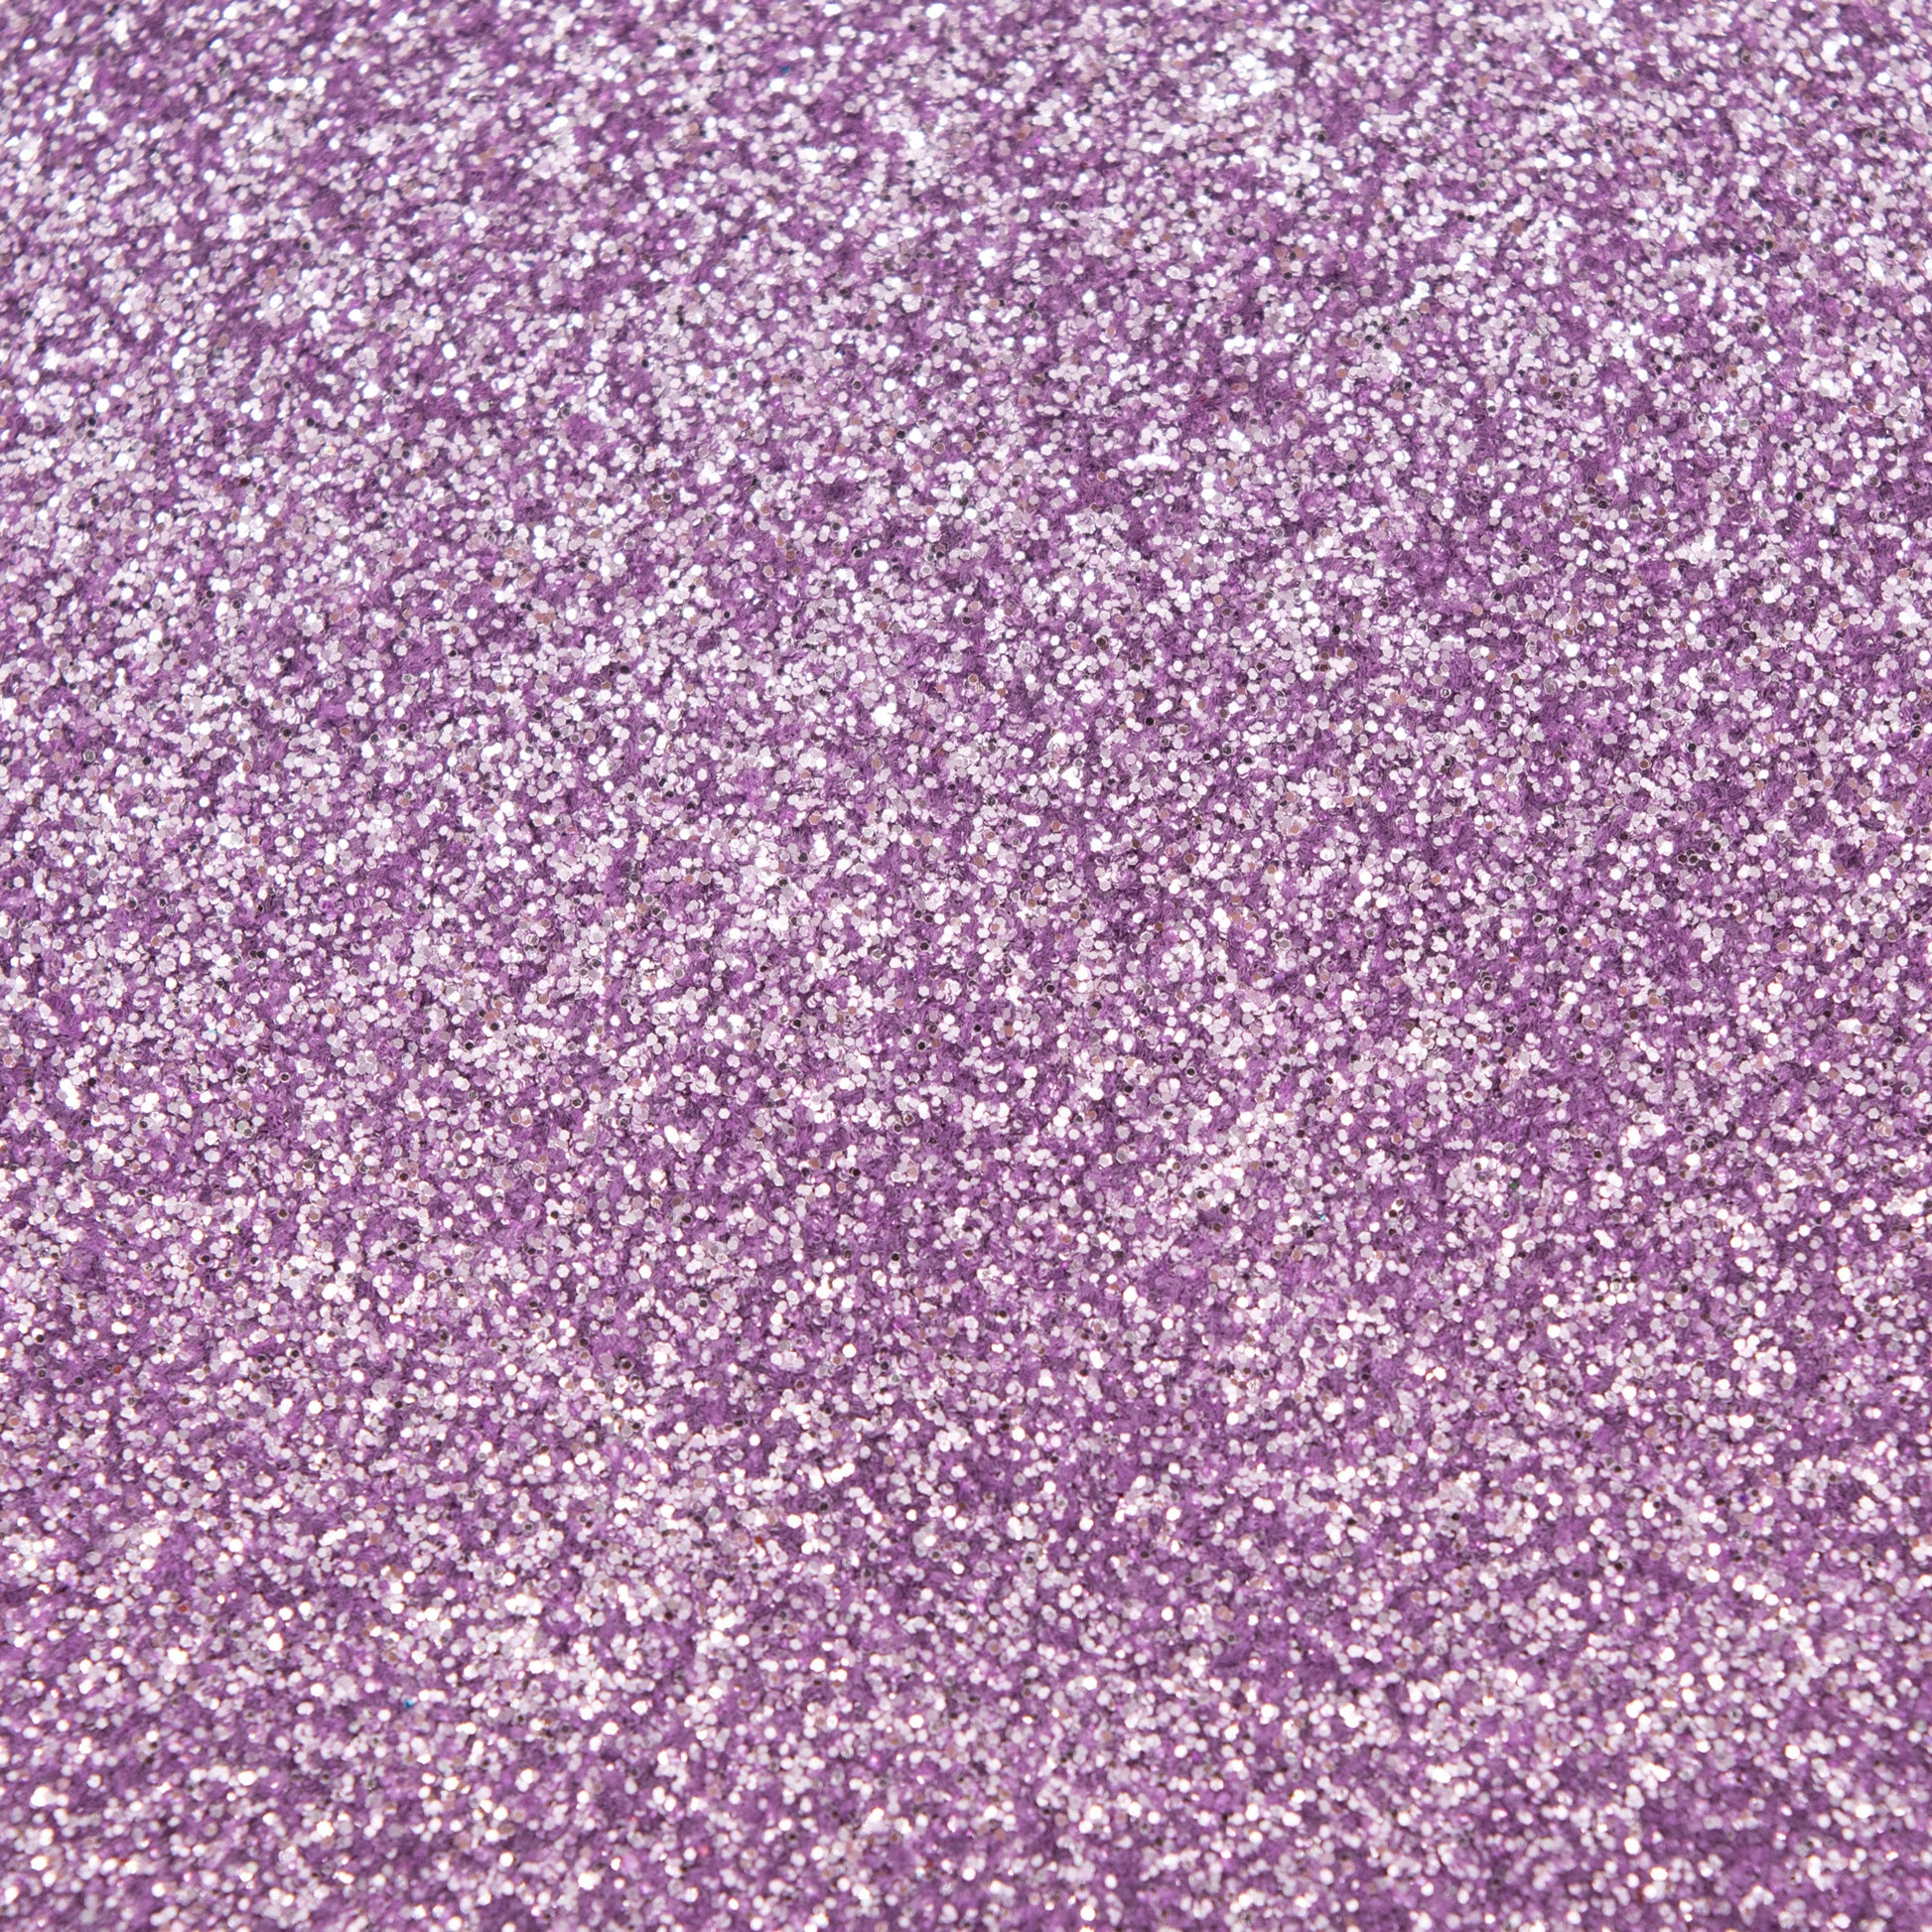 Glitter Standard Frosted Lilac 1kg BULK - Default (GLITSTLIL1KG)